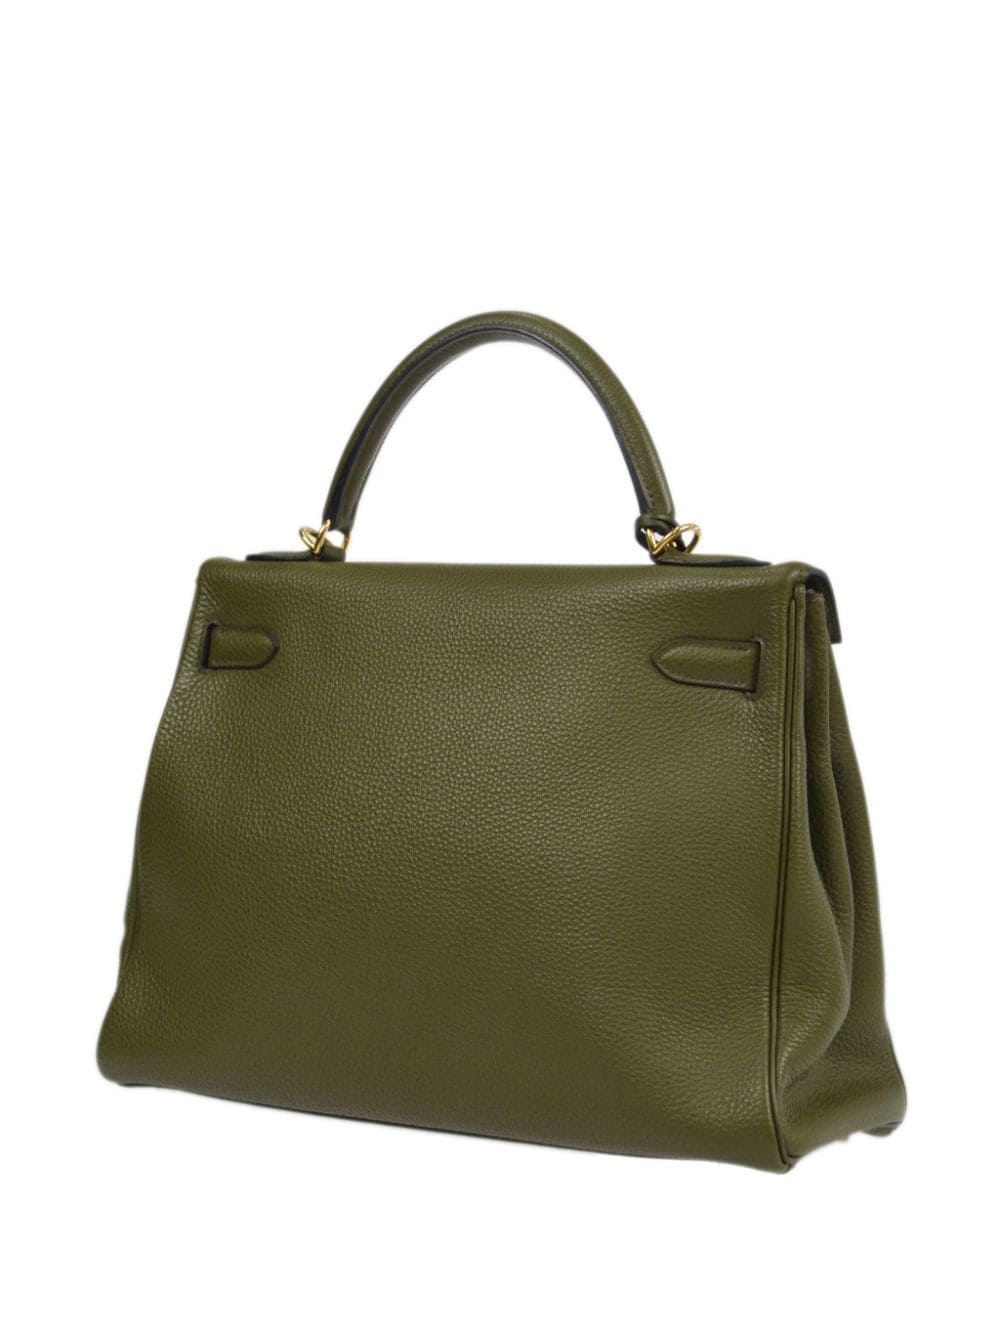 Hermès 2002 pre-owned Kelly 32 handbag - Groen